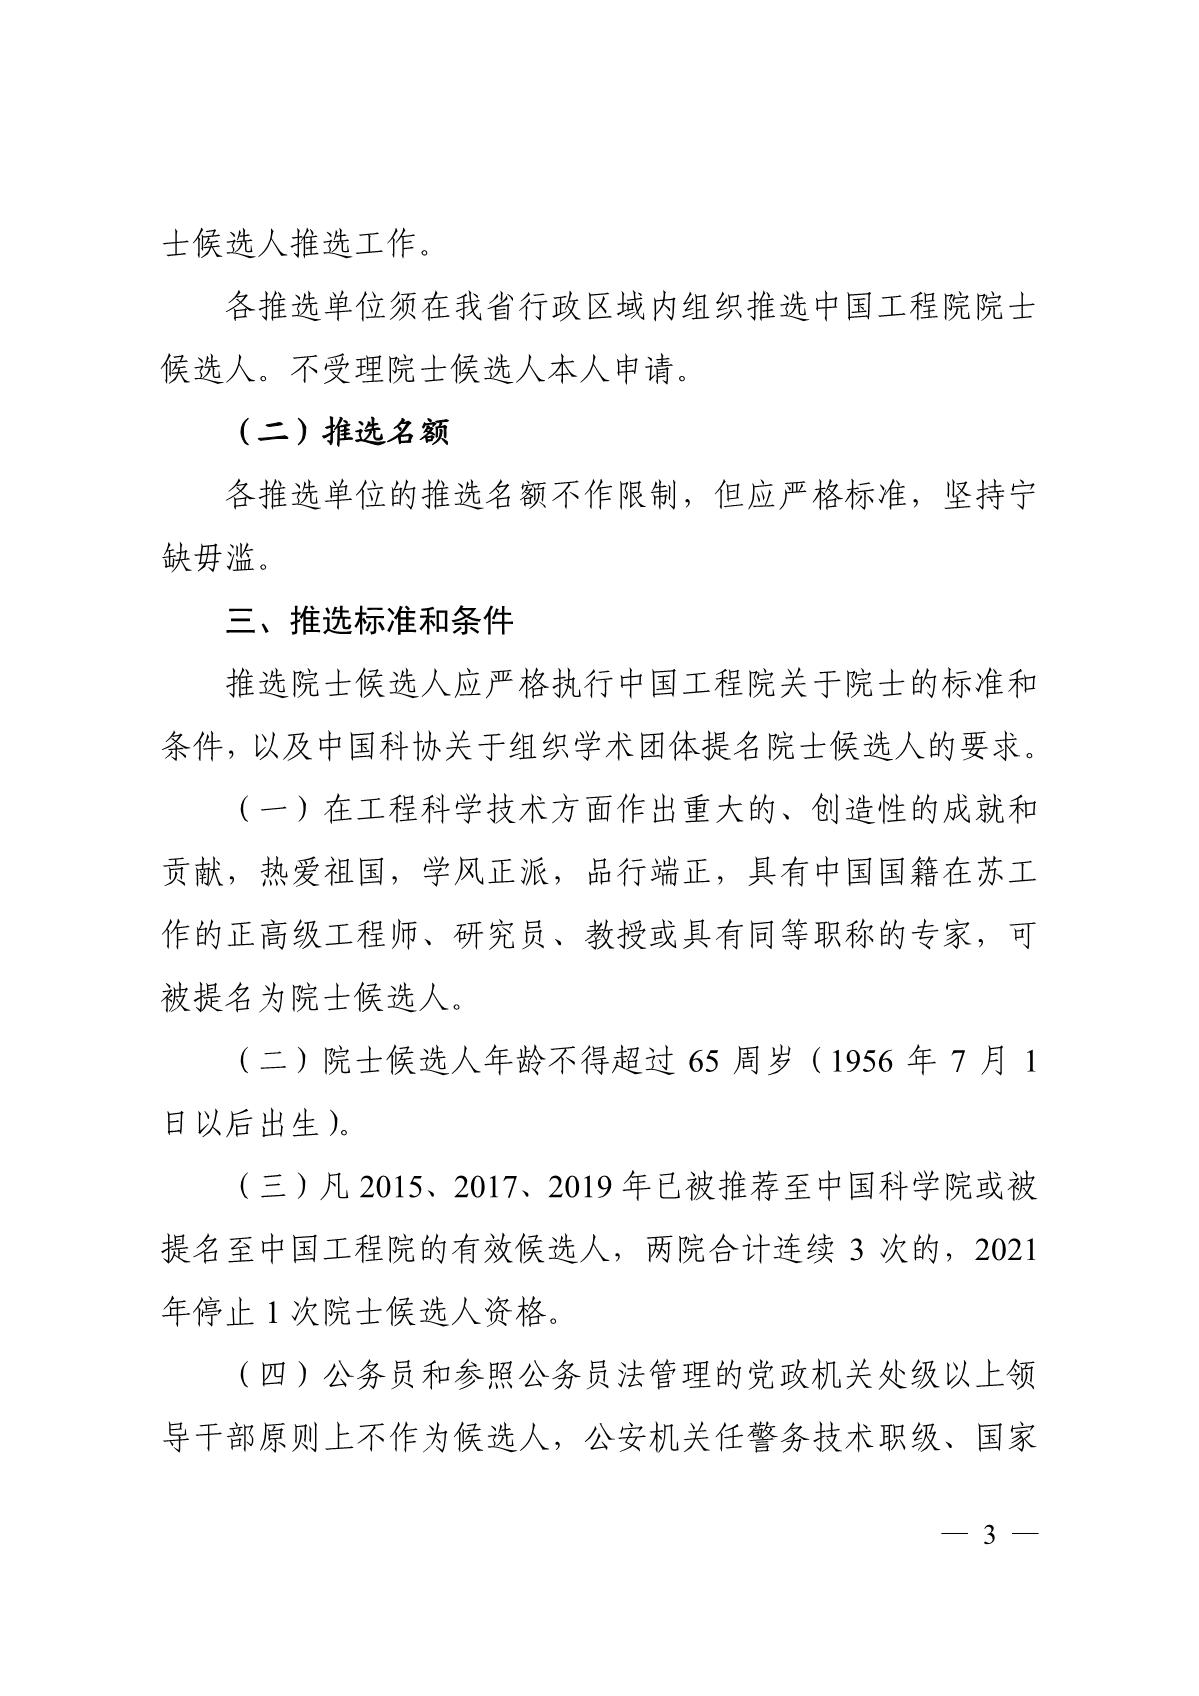 关于组织推选2021年中国工程院院士候选人的通知_3.JPG